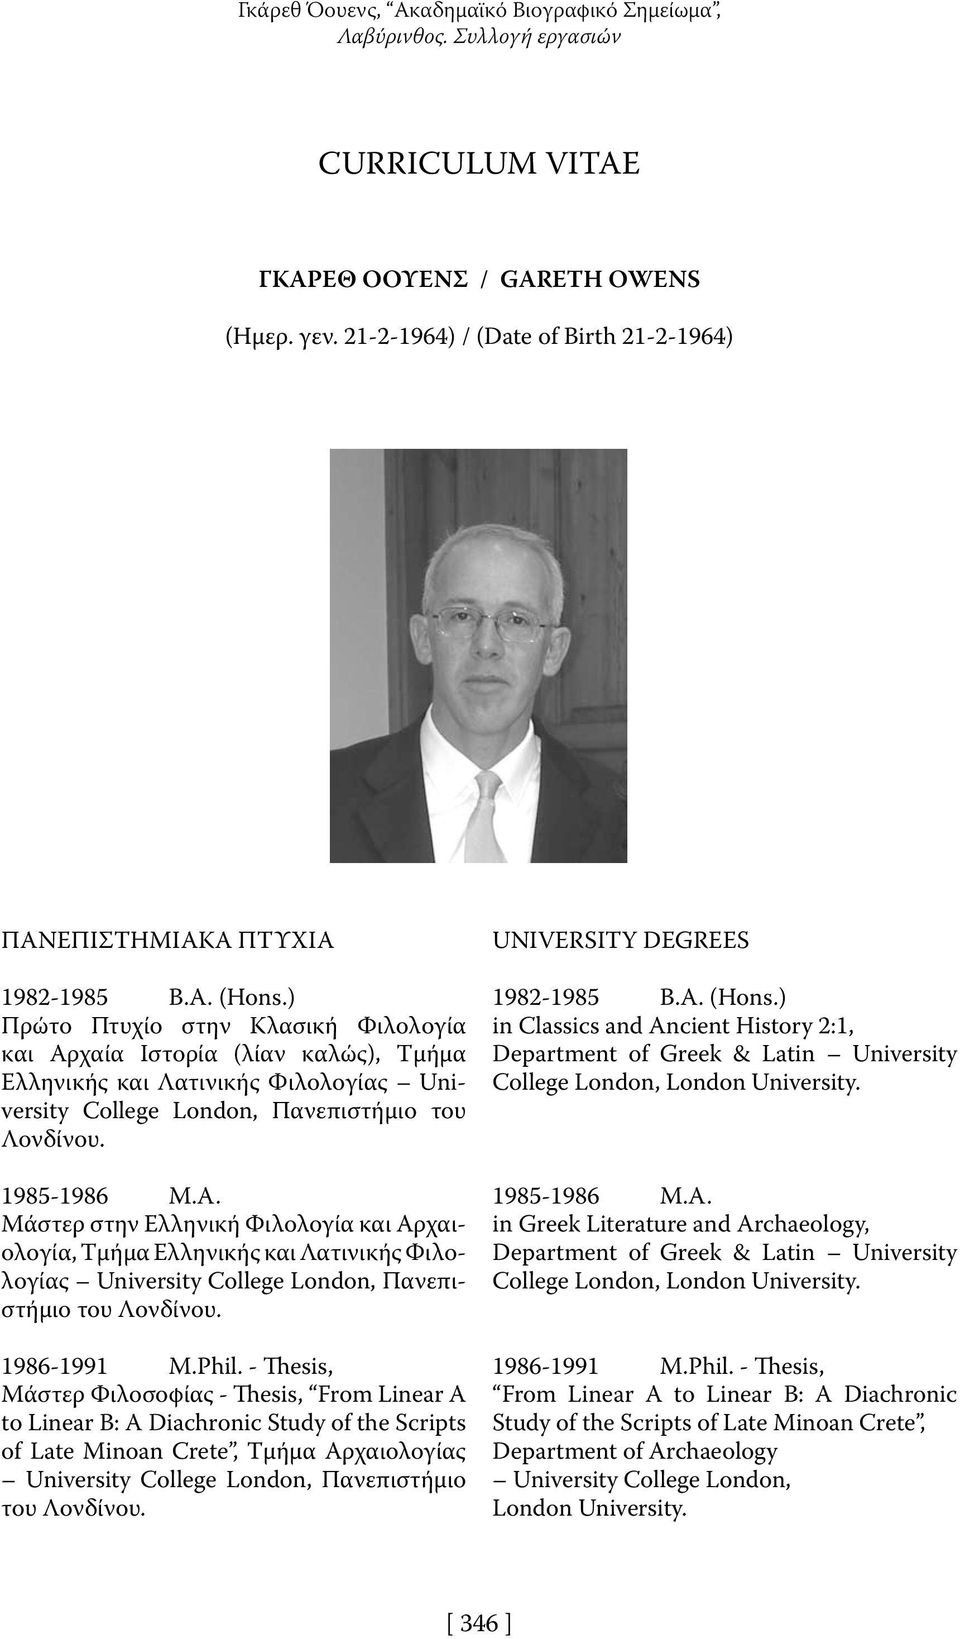 ) Πρώτο Πτυχίο στην Κλασική Φιλολογία και Αρχαία Ιστορία (λίαν καλώς), Τμήμα Ελληνικής και Λατινικής Φιλολογίας University College London, Πανεπιστήμιο του Λονδίνου. 1985-1986 M.A.